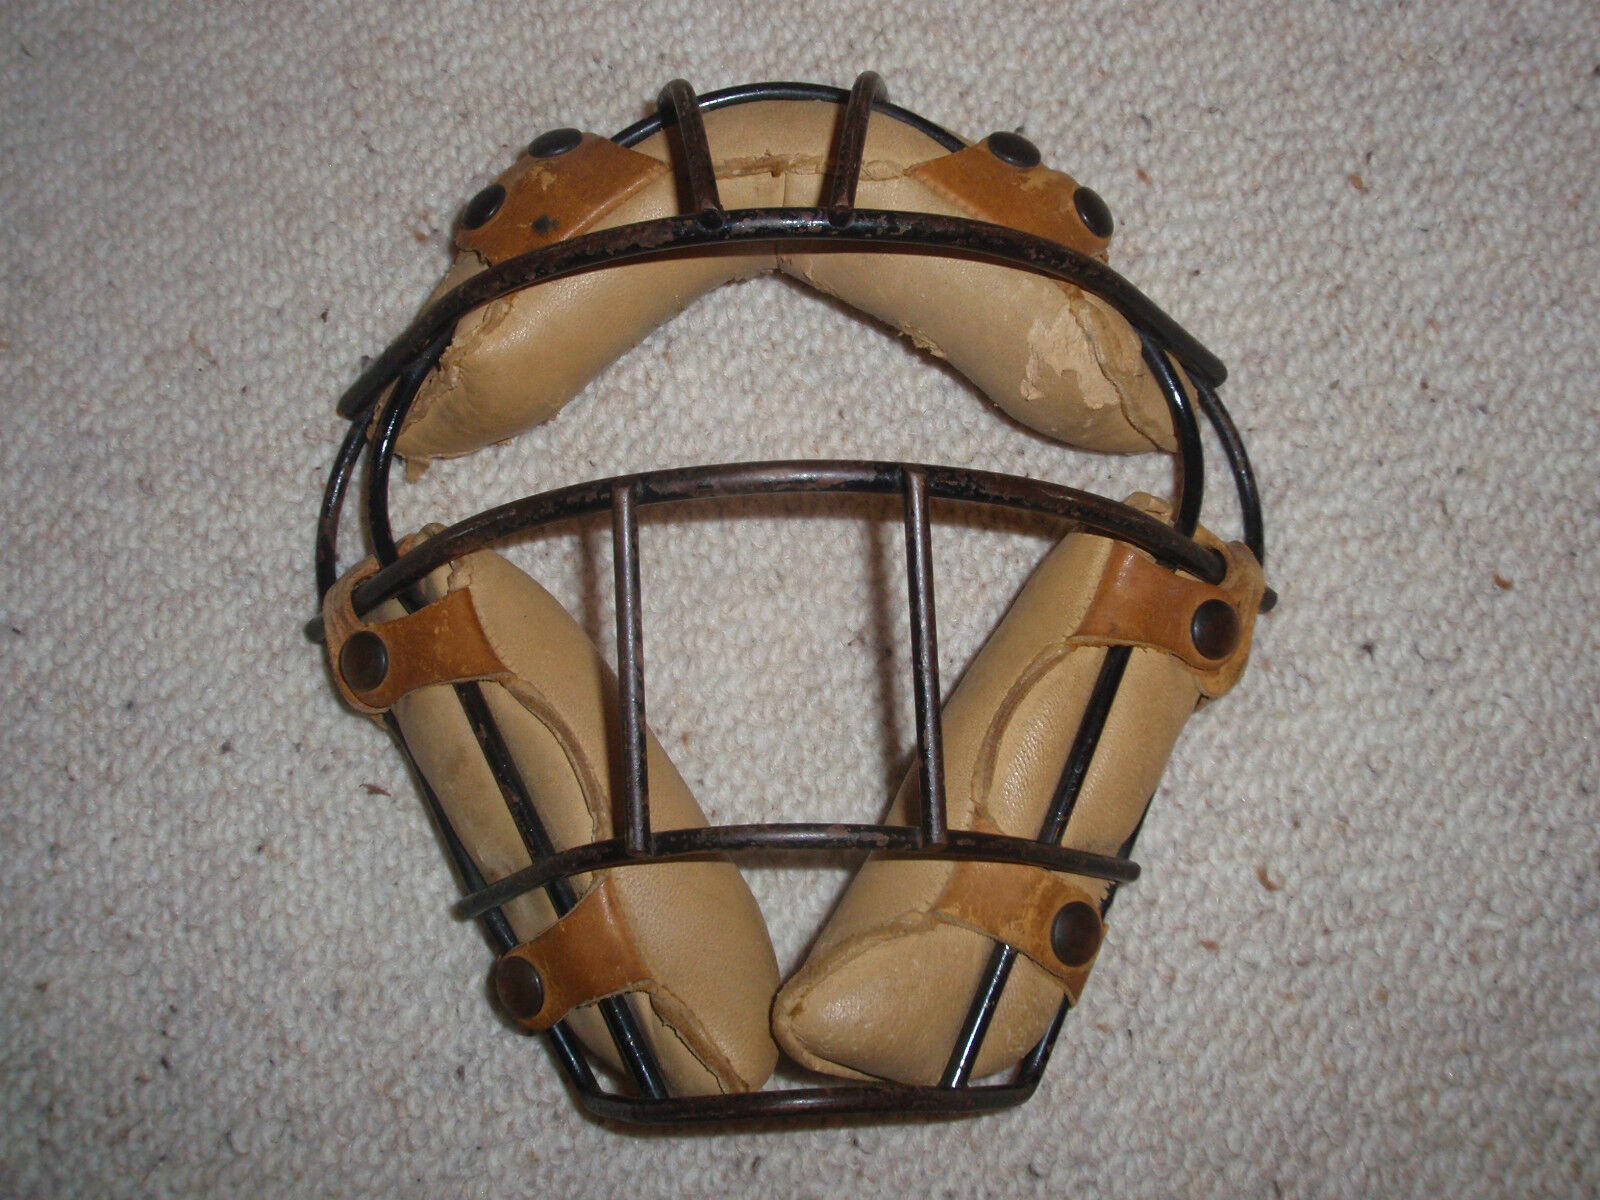 Vintage Metal and Leather Baseball Mask